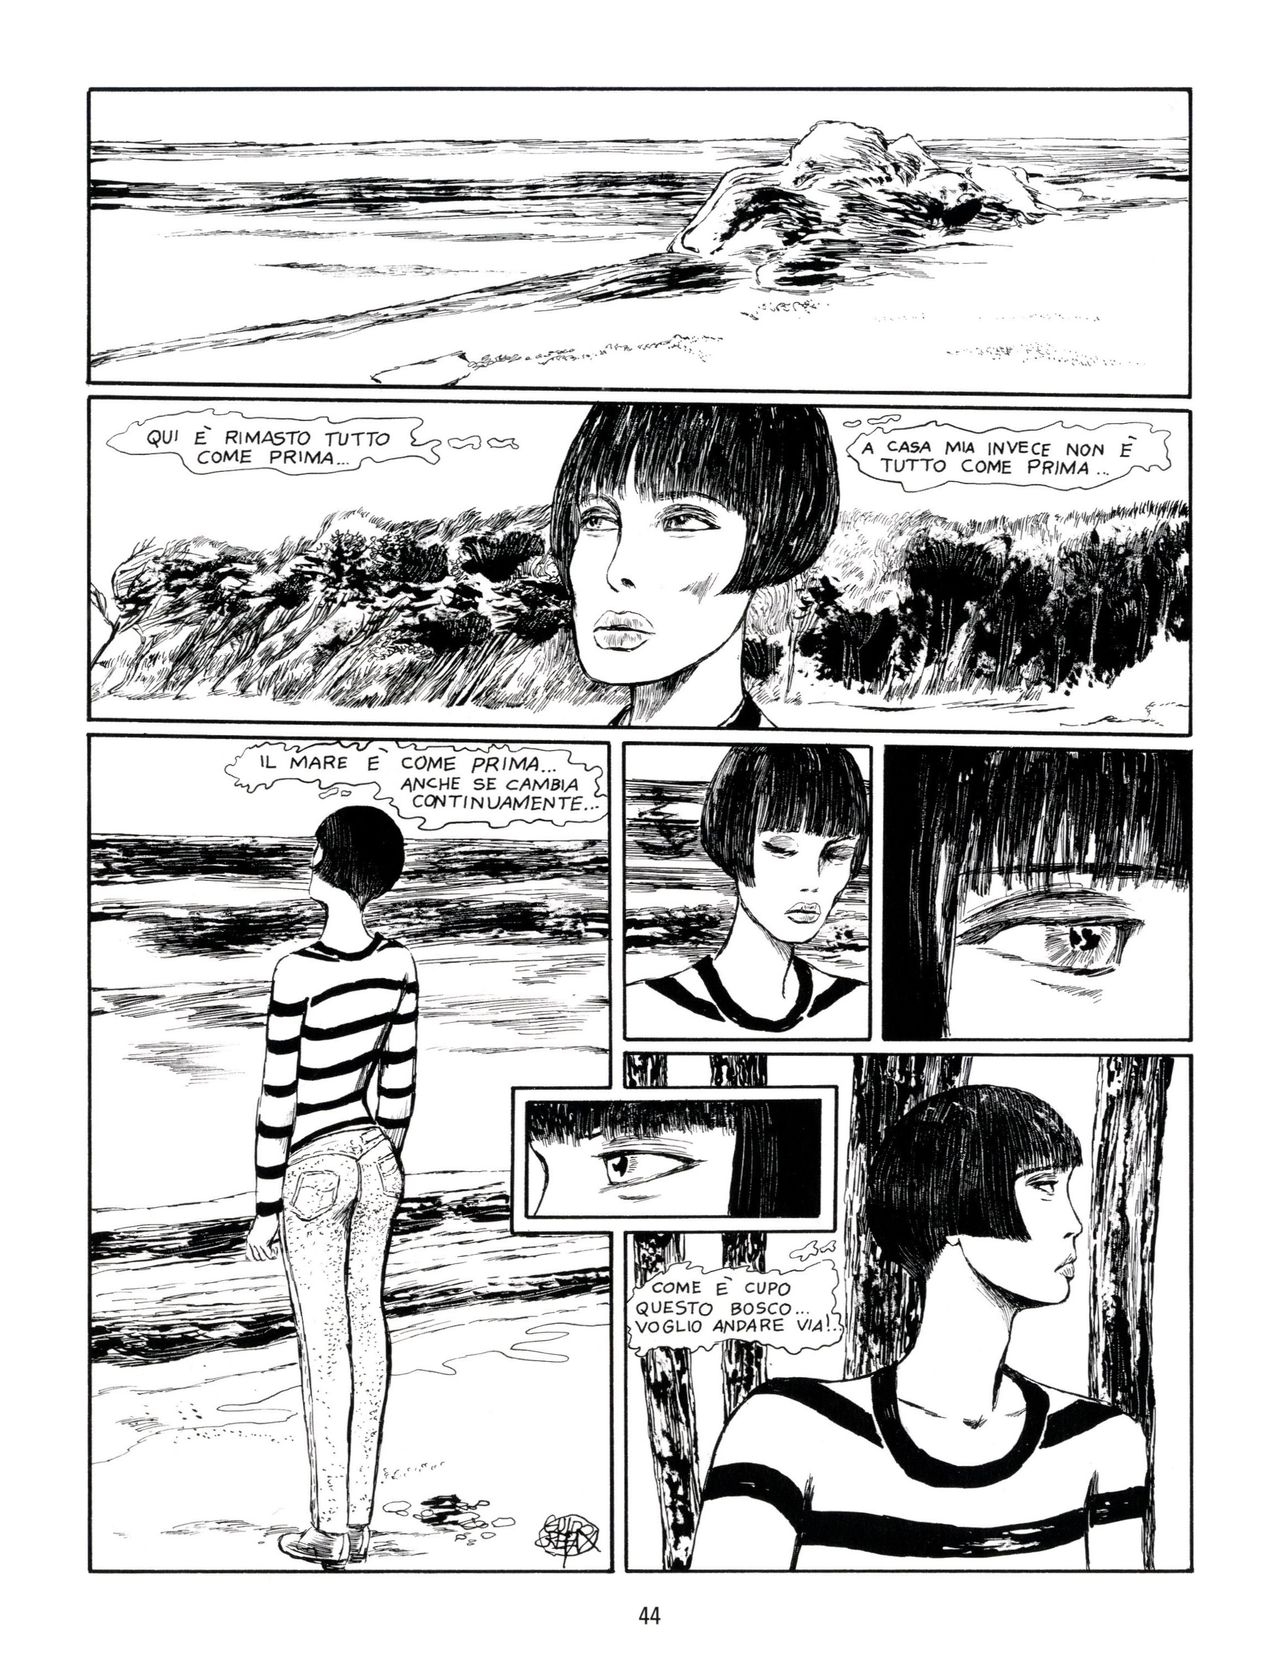 [Guido Crepax] Erotica Fumetti #29 : Arrivederci Valentina? : Verso una nuova vita [Italian] 47